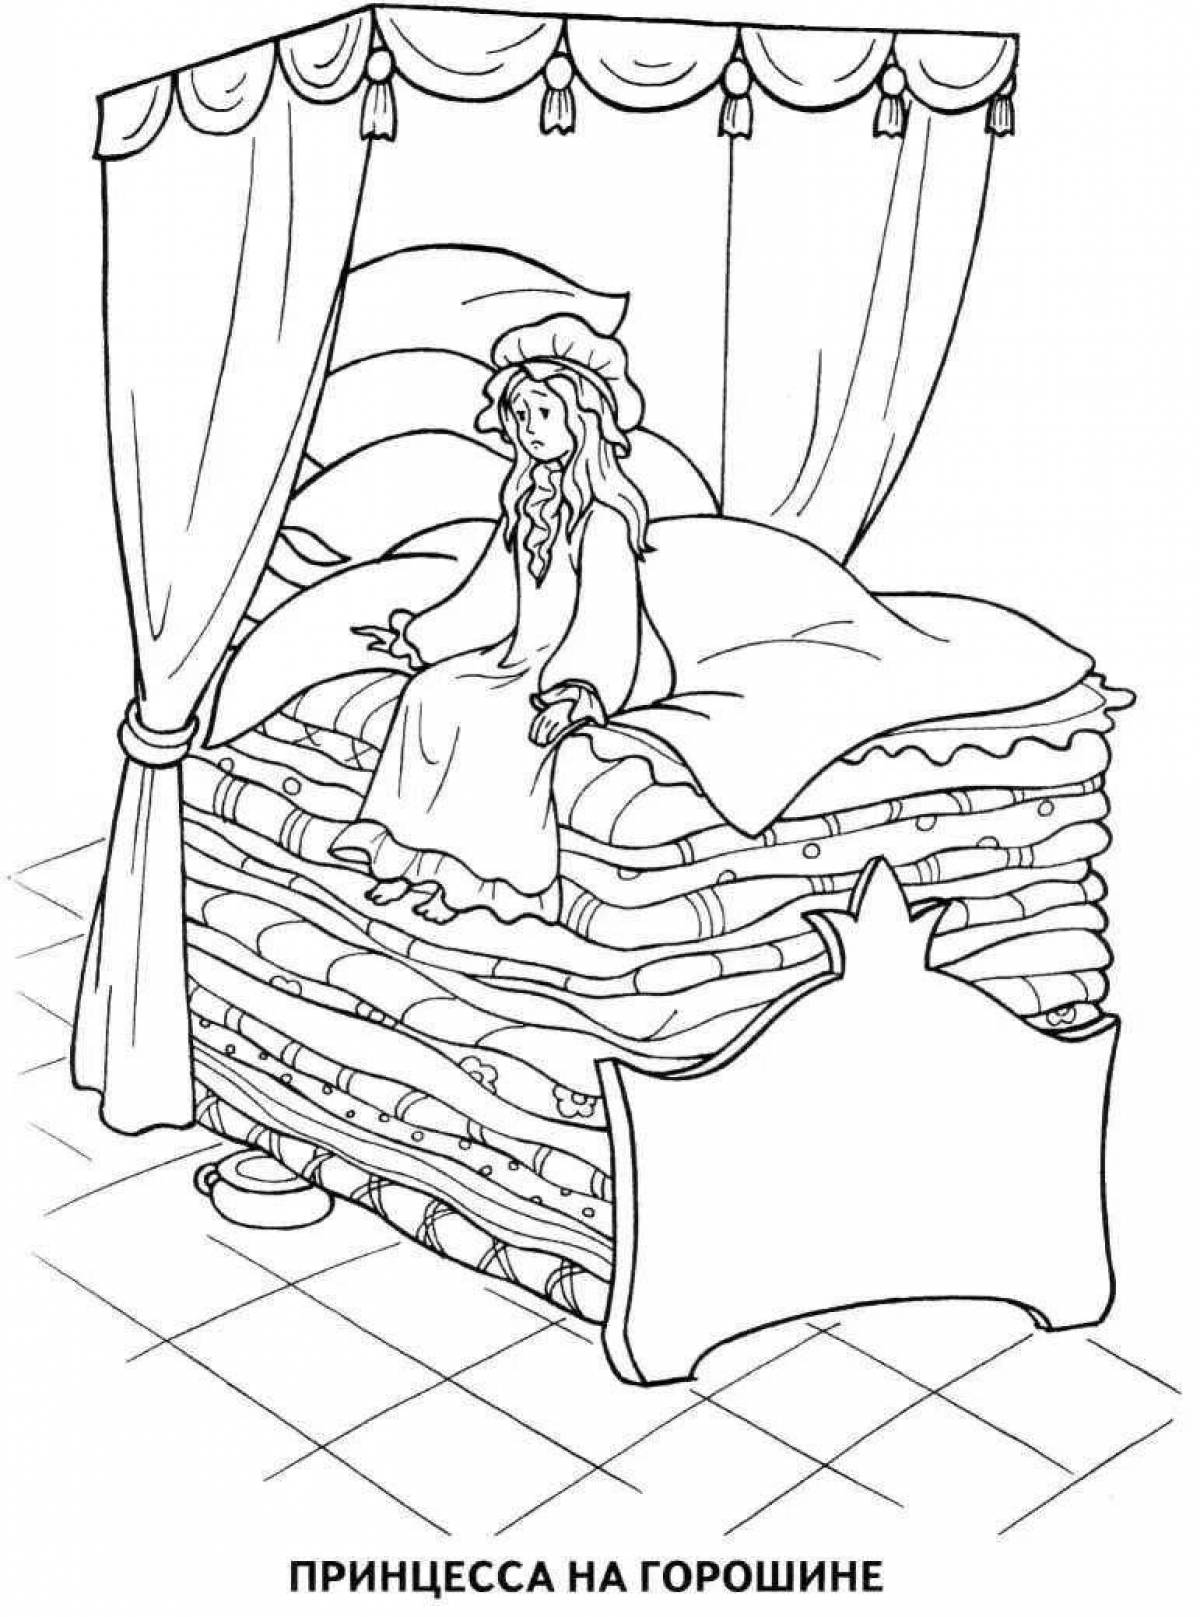 Иллюстрация к сказке принцесса на горошине. Сказки Андерсена принцесса на горошине. Сказки Андерсена раскраски принцесса на горошине. Андерсен принцесса на горошине раскраска. Раскраски из сказки принцесса на горошине.